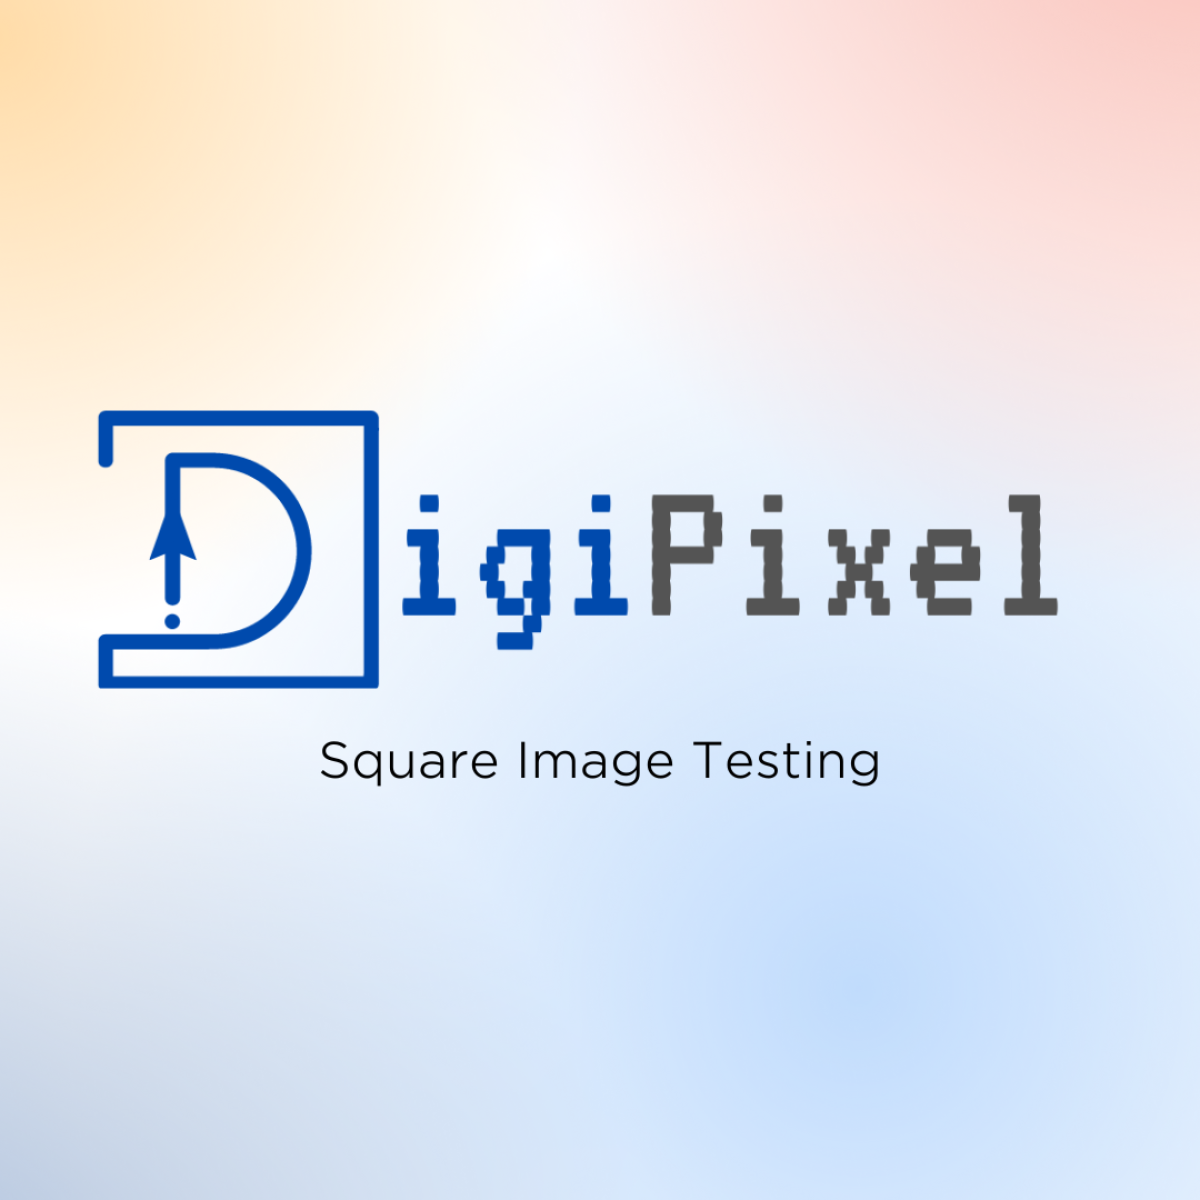 DigiPixel-Marketing-Ad-26-May-V3-7